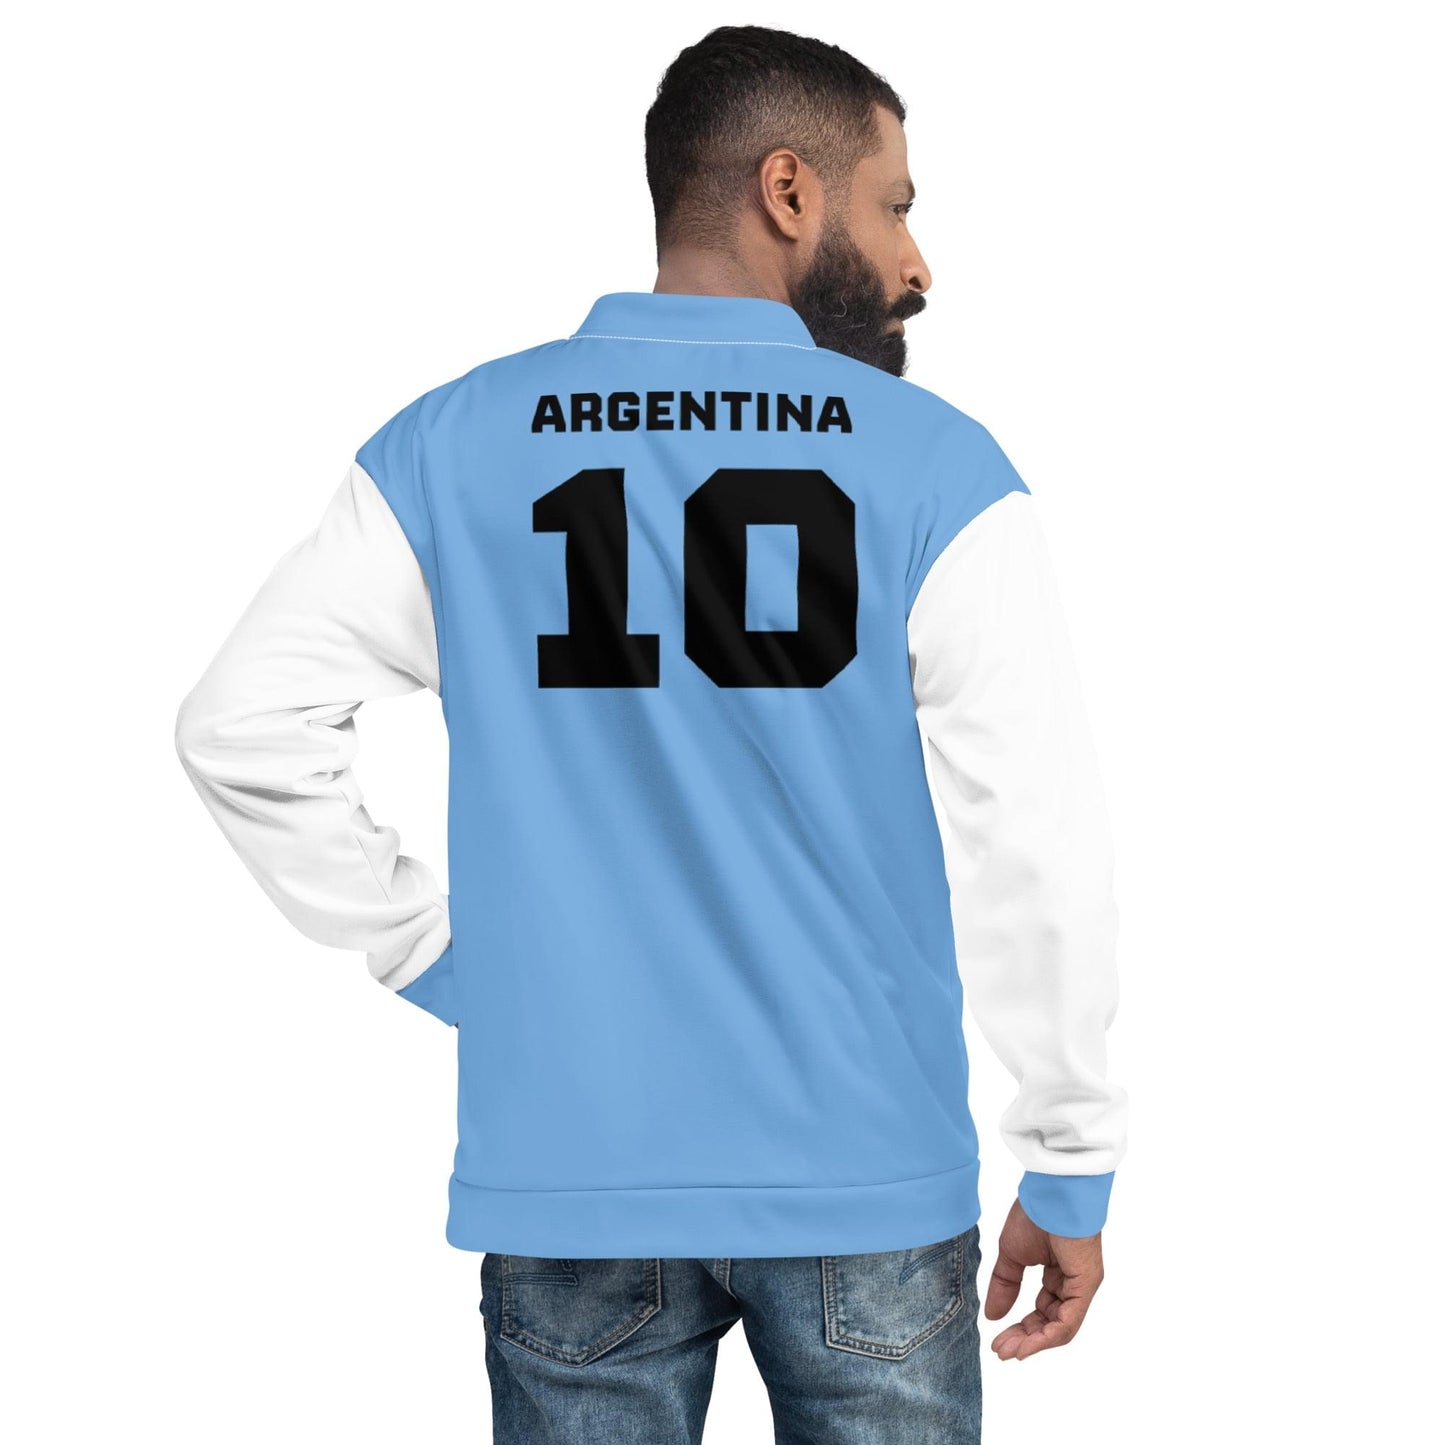 Giacca Argentina / Stile di abbigliamento Argentina unisex / Colori della bandiera Argentina